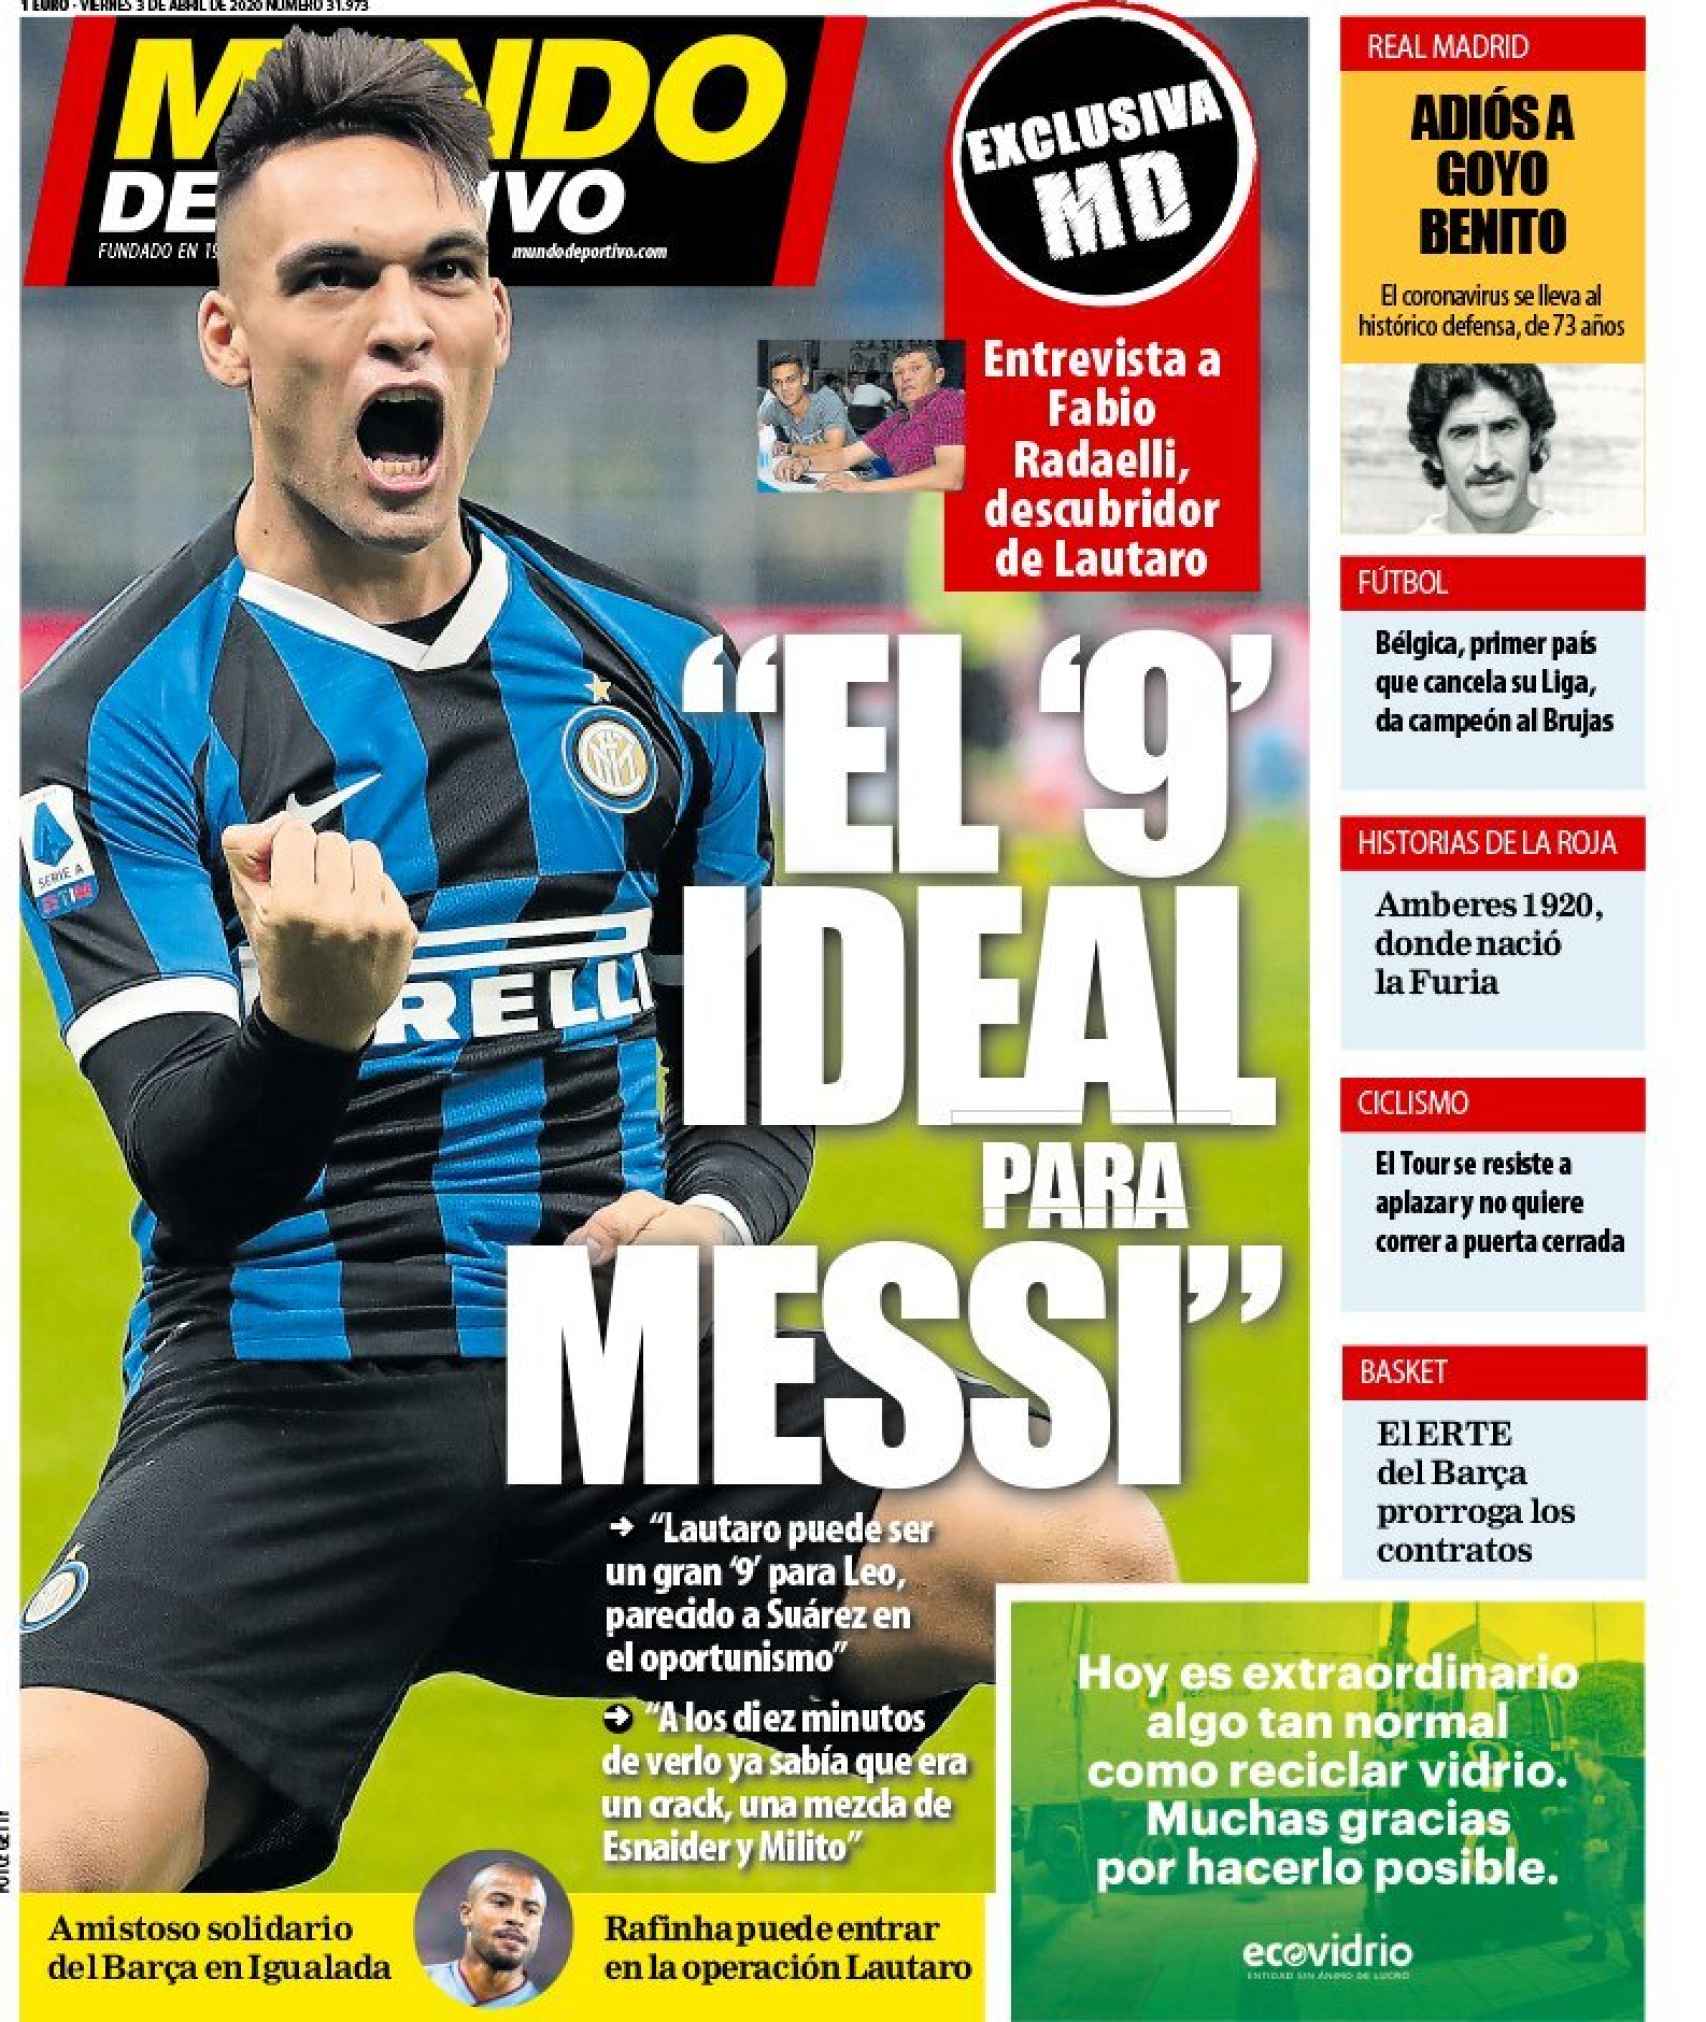 La portada del diario Mundo Deportivo (03/04/2020)